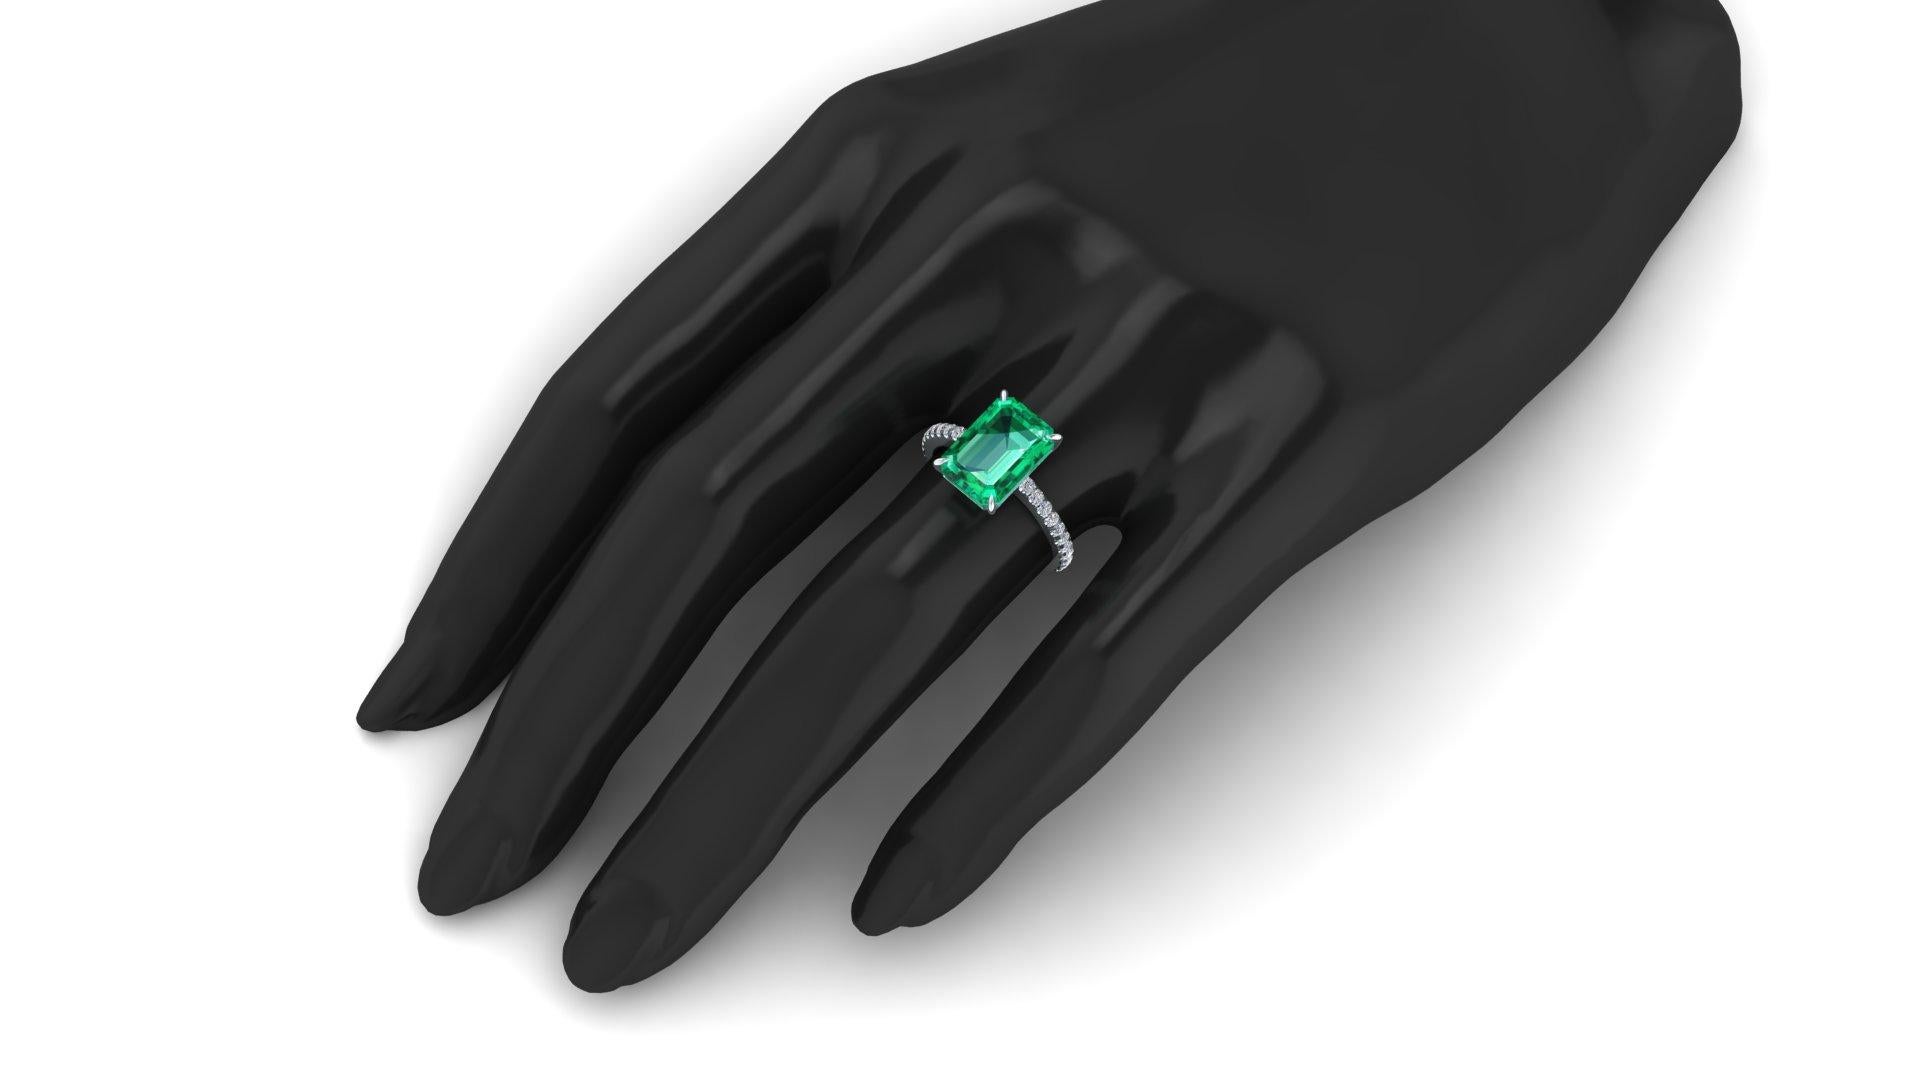 FERRUCCI GIA Certified 3.31 Carat Emerald Cut Emerald Diamond Platinum Ring 3